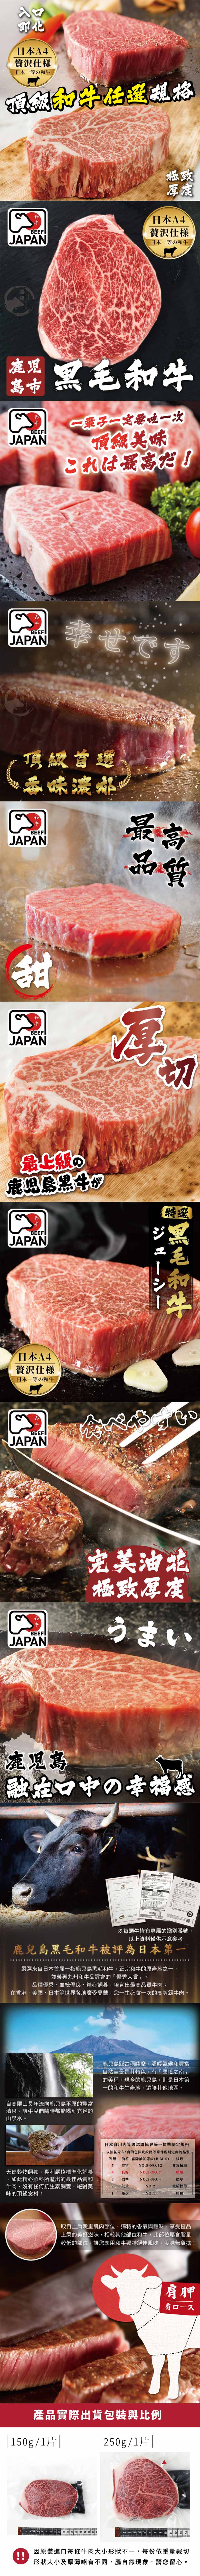 【欣明生鮮】日本A4純種黑毛和牛嫩肩菲力牛排 150g/厚切250g/1片/包